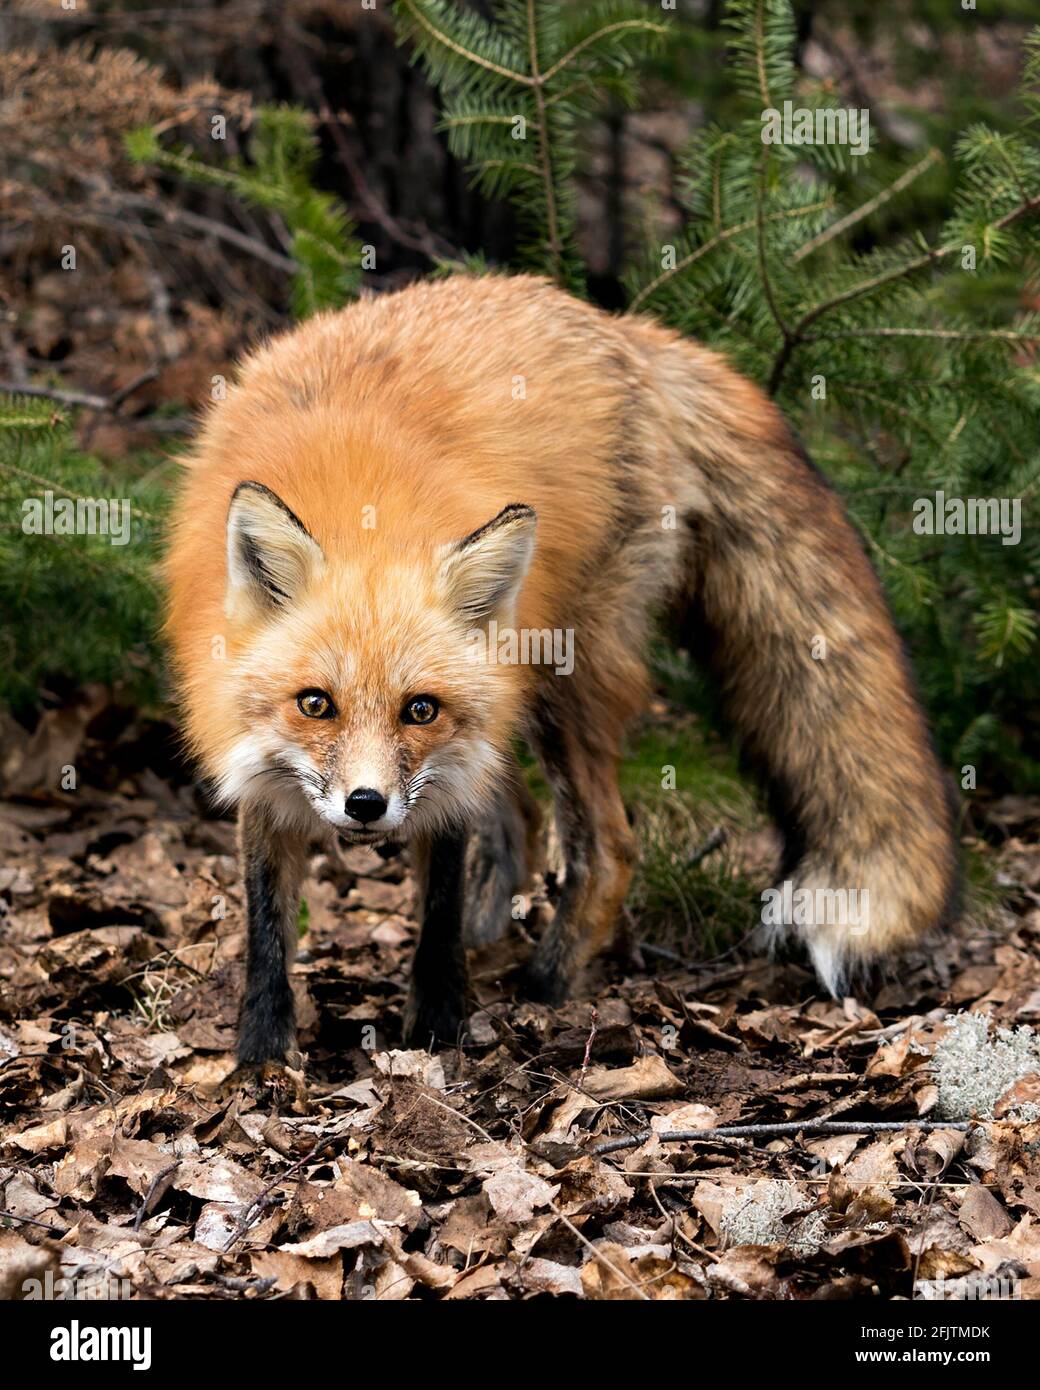 Rotfuchs Nahaufnahme Profilansicht in der Frühjahrssaison zeigt Fuchsschwanz, Fell, in seiner Umgebung und Lebensraum mit einem unscharfen Hintergrund. Fox-Bild. Bild Stockfoto